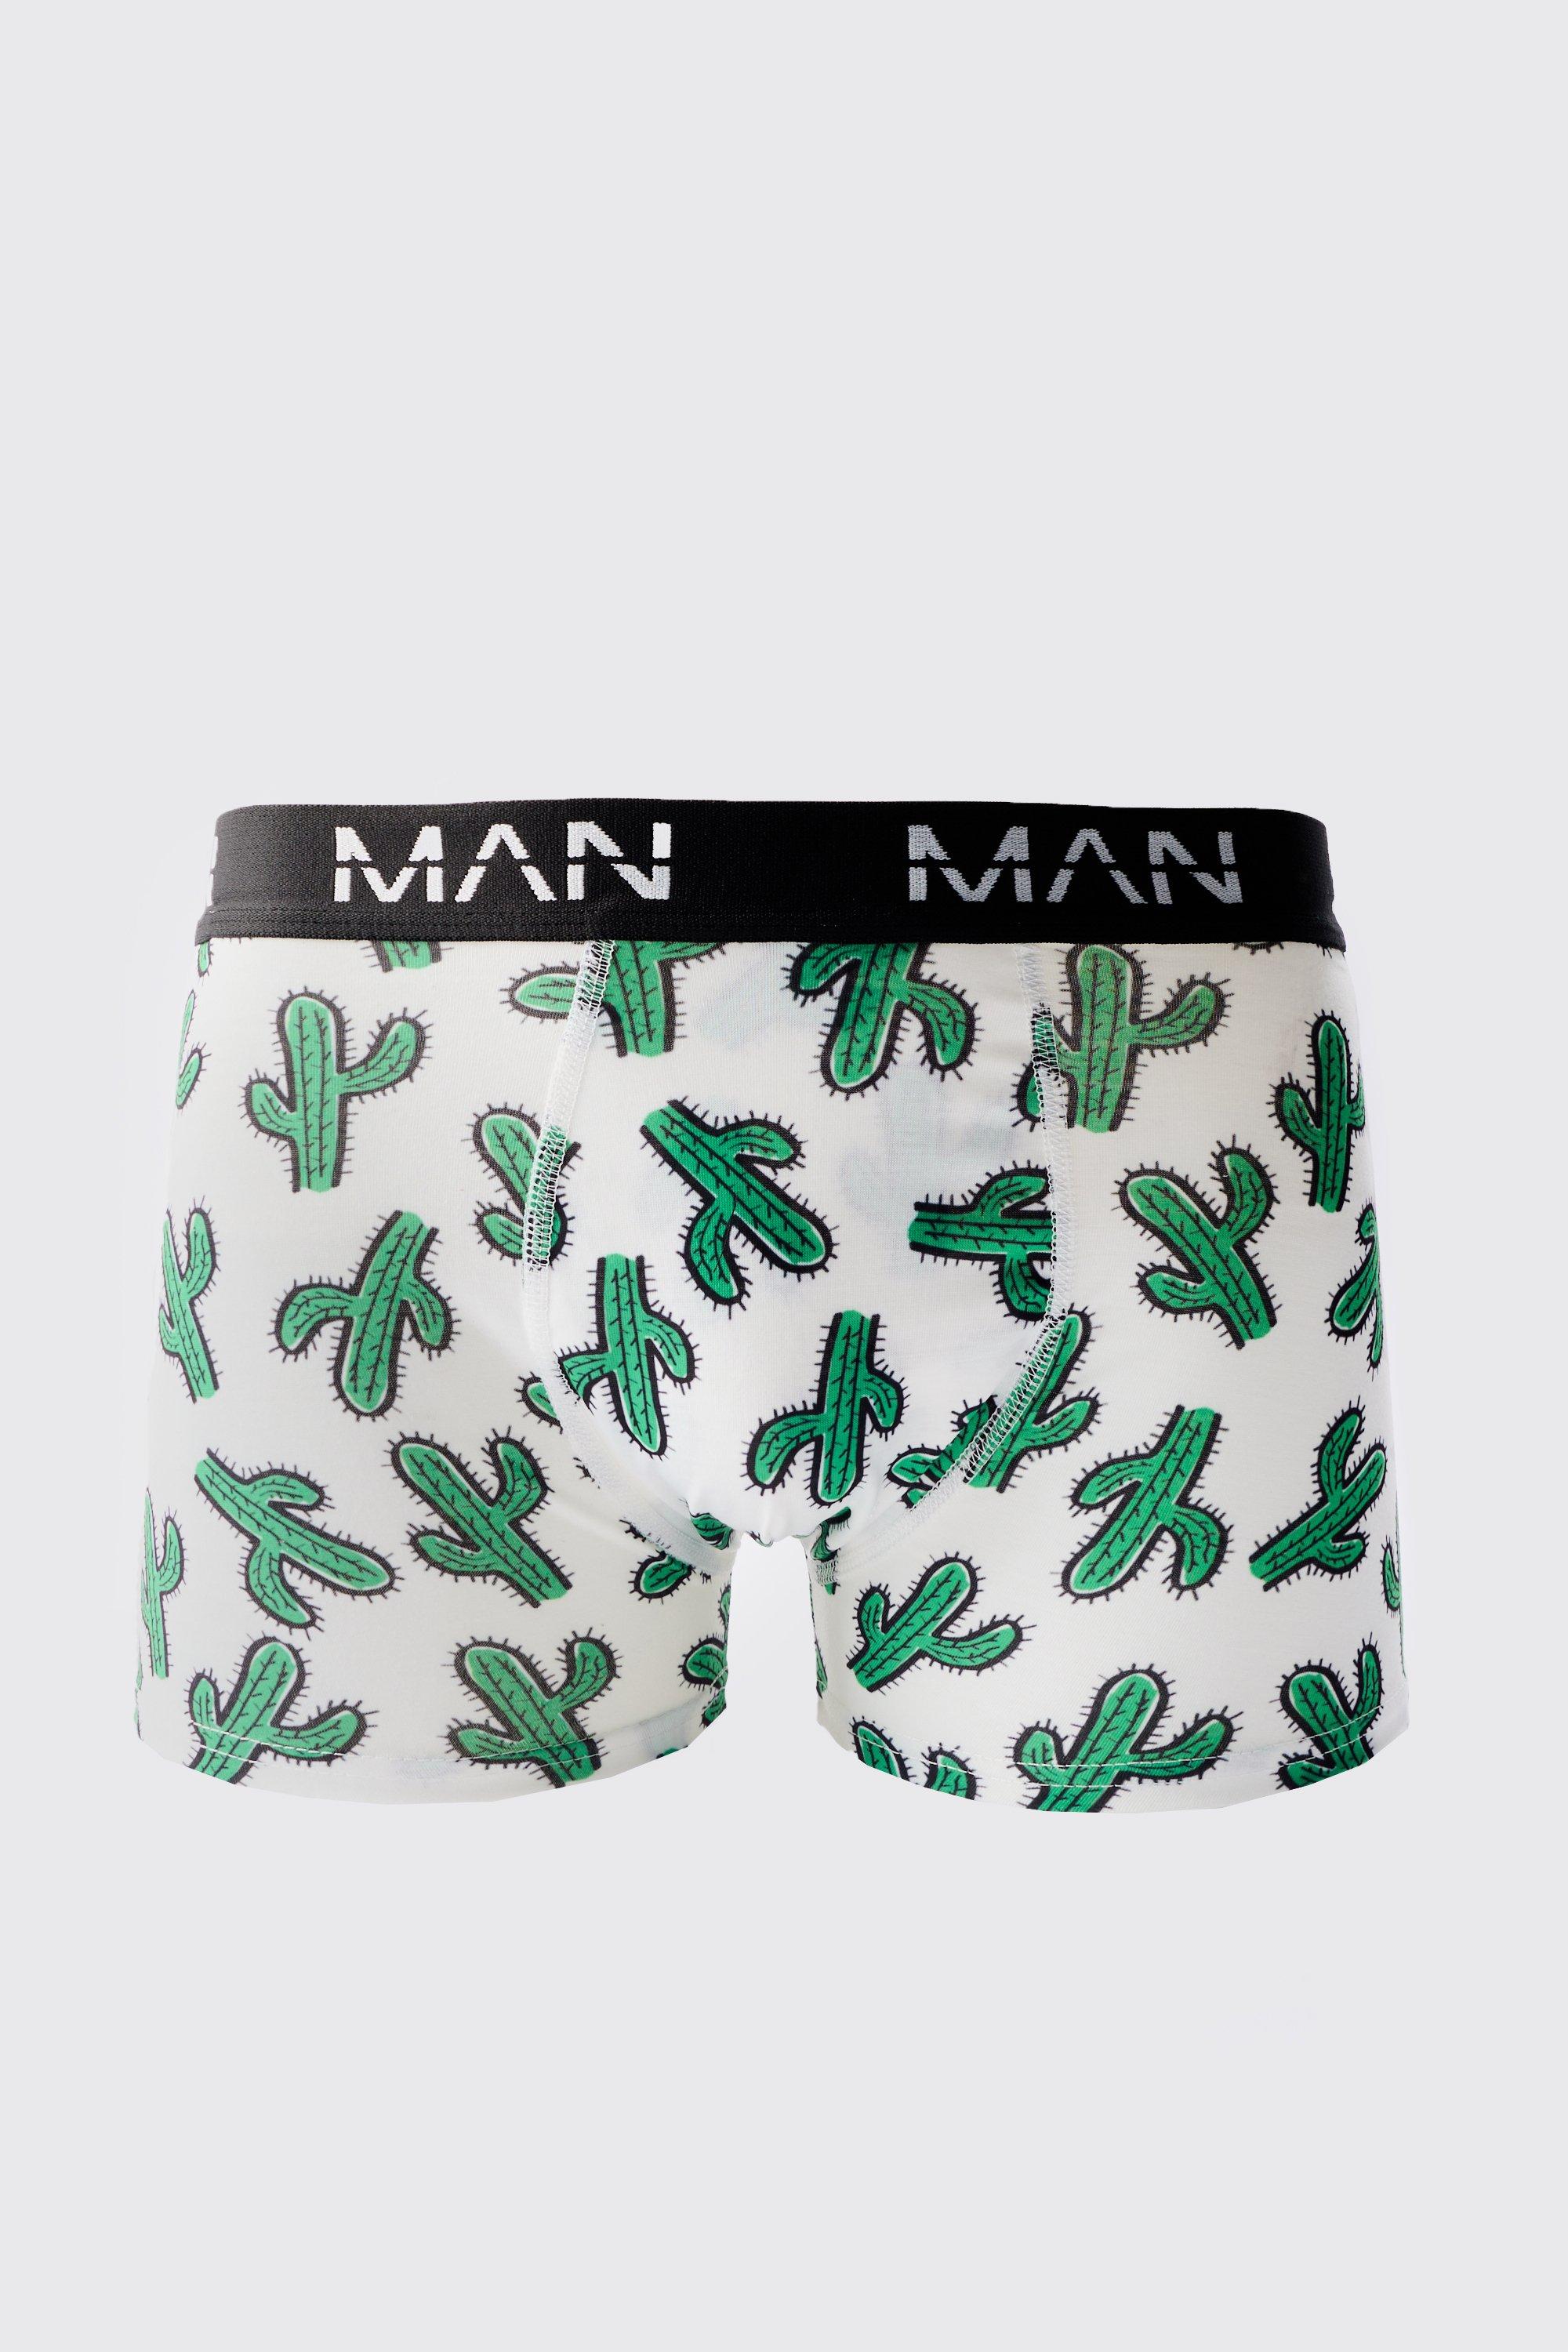 Mens Multi Man Cactus Printed Boxers, Multi